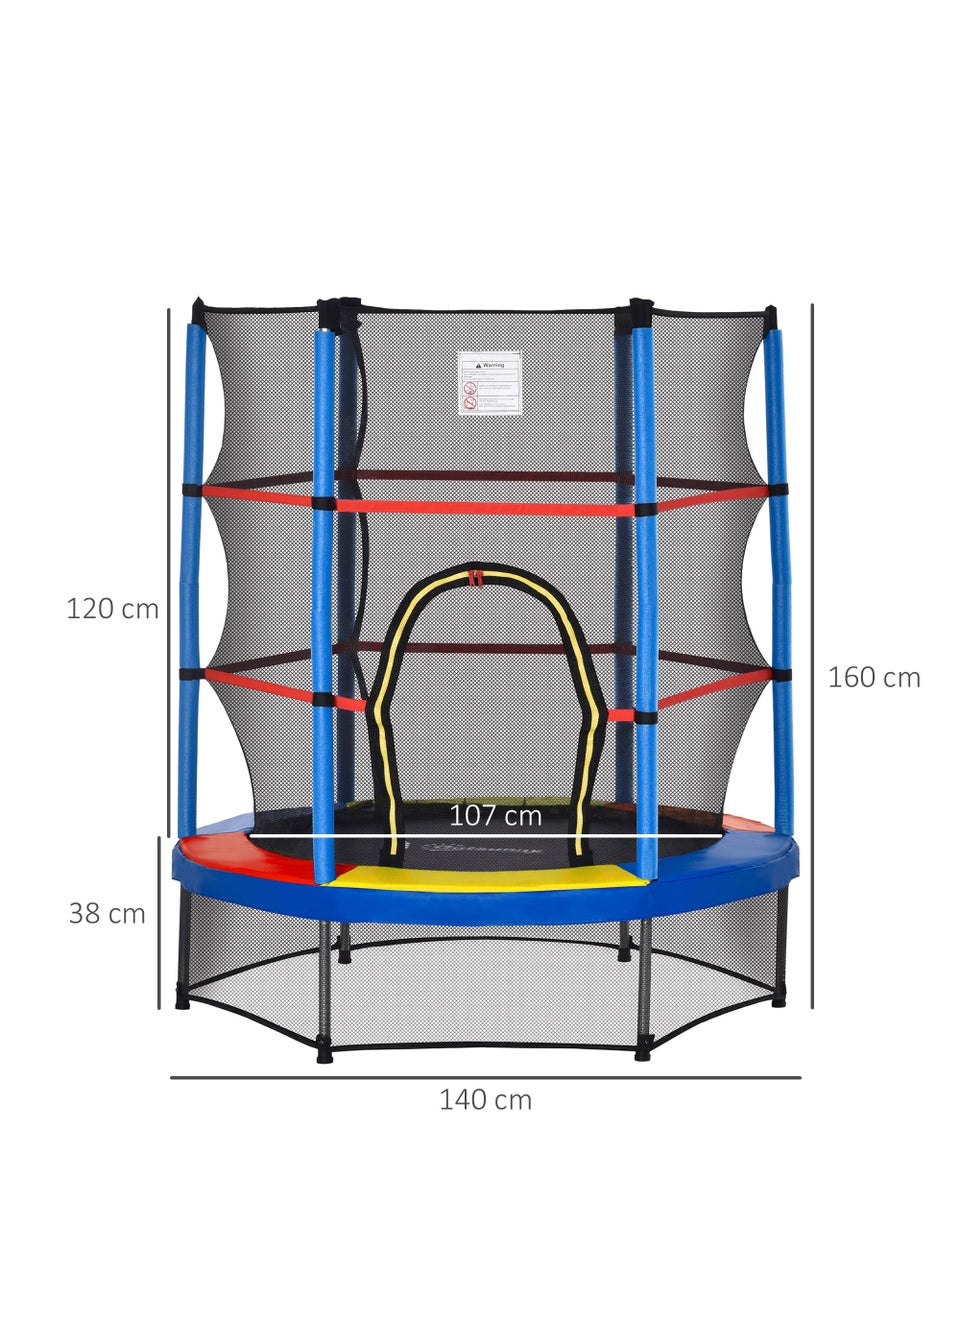 HOMCOM Trampoline with Safety Enclosure Net (140cm x 160cm)